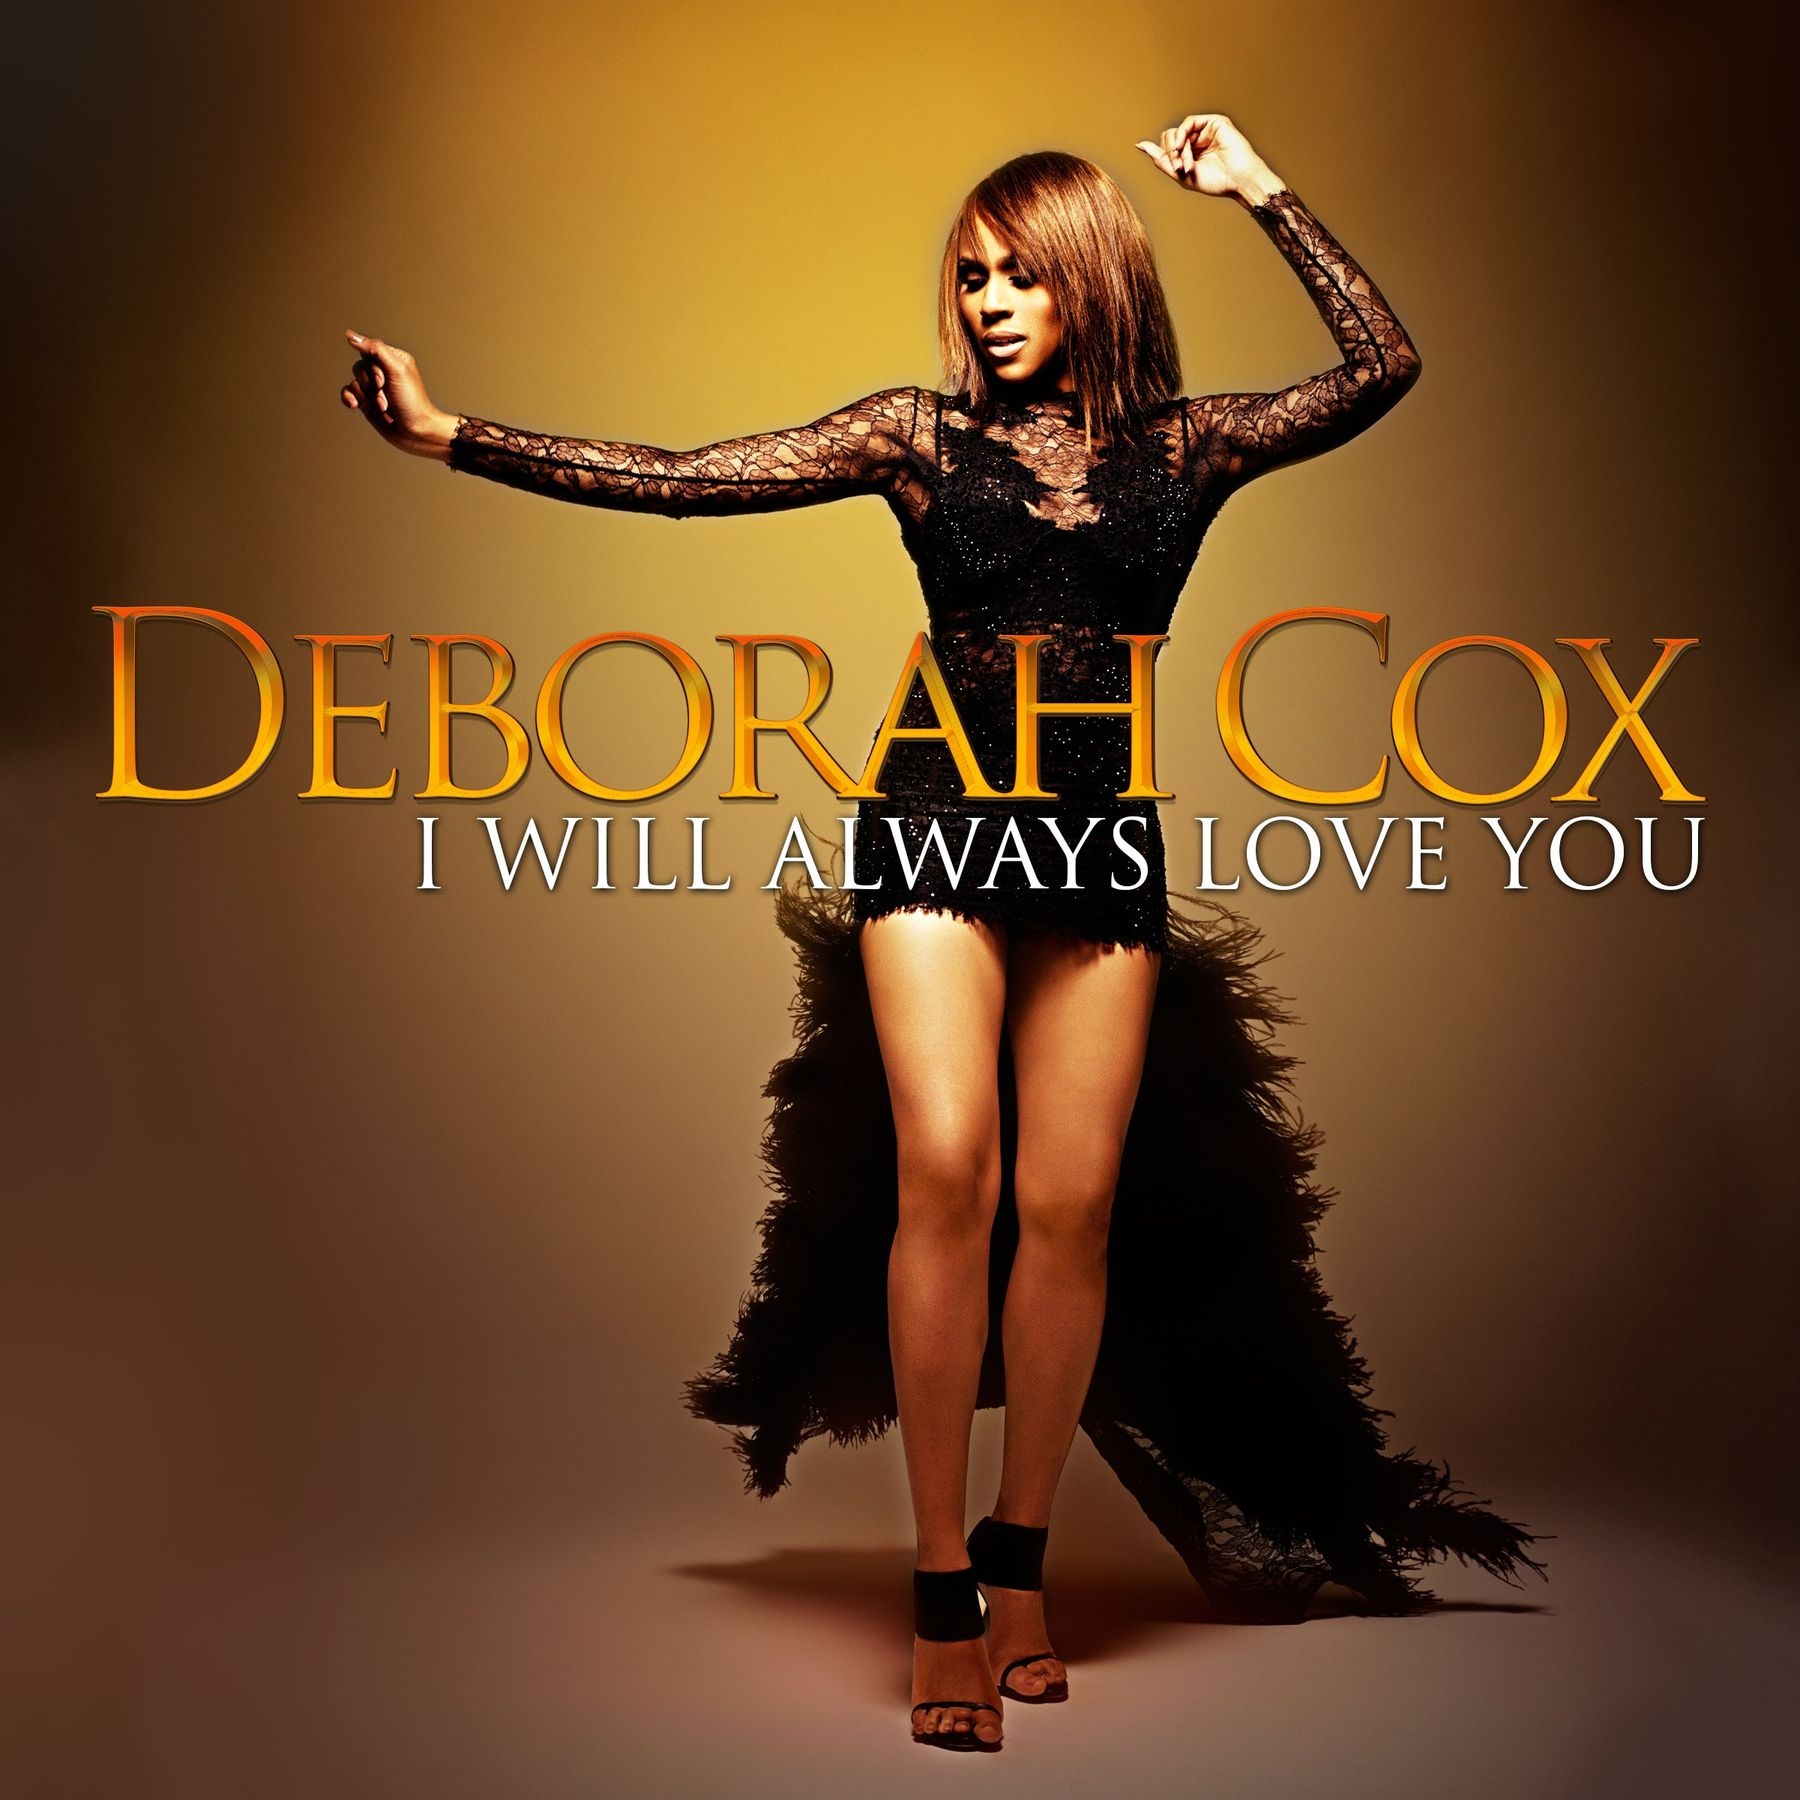 Deborah Cox Will Release Album of Whitney Houston Covers